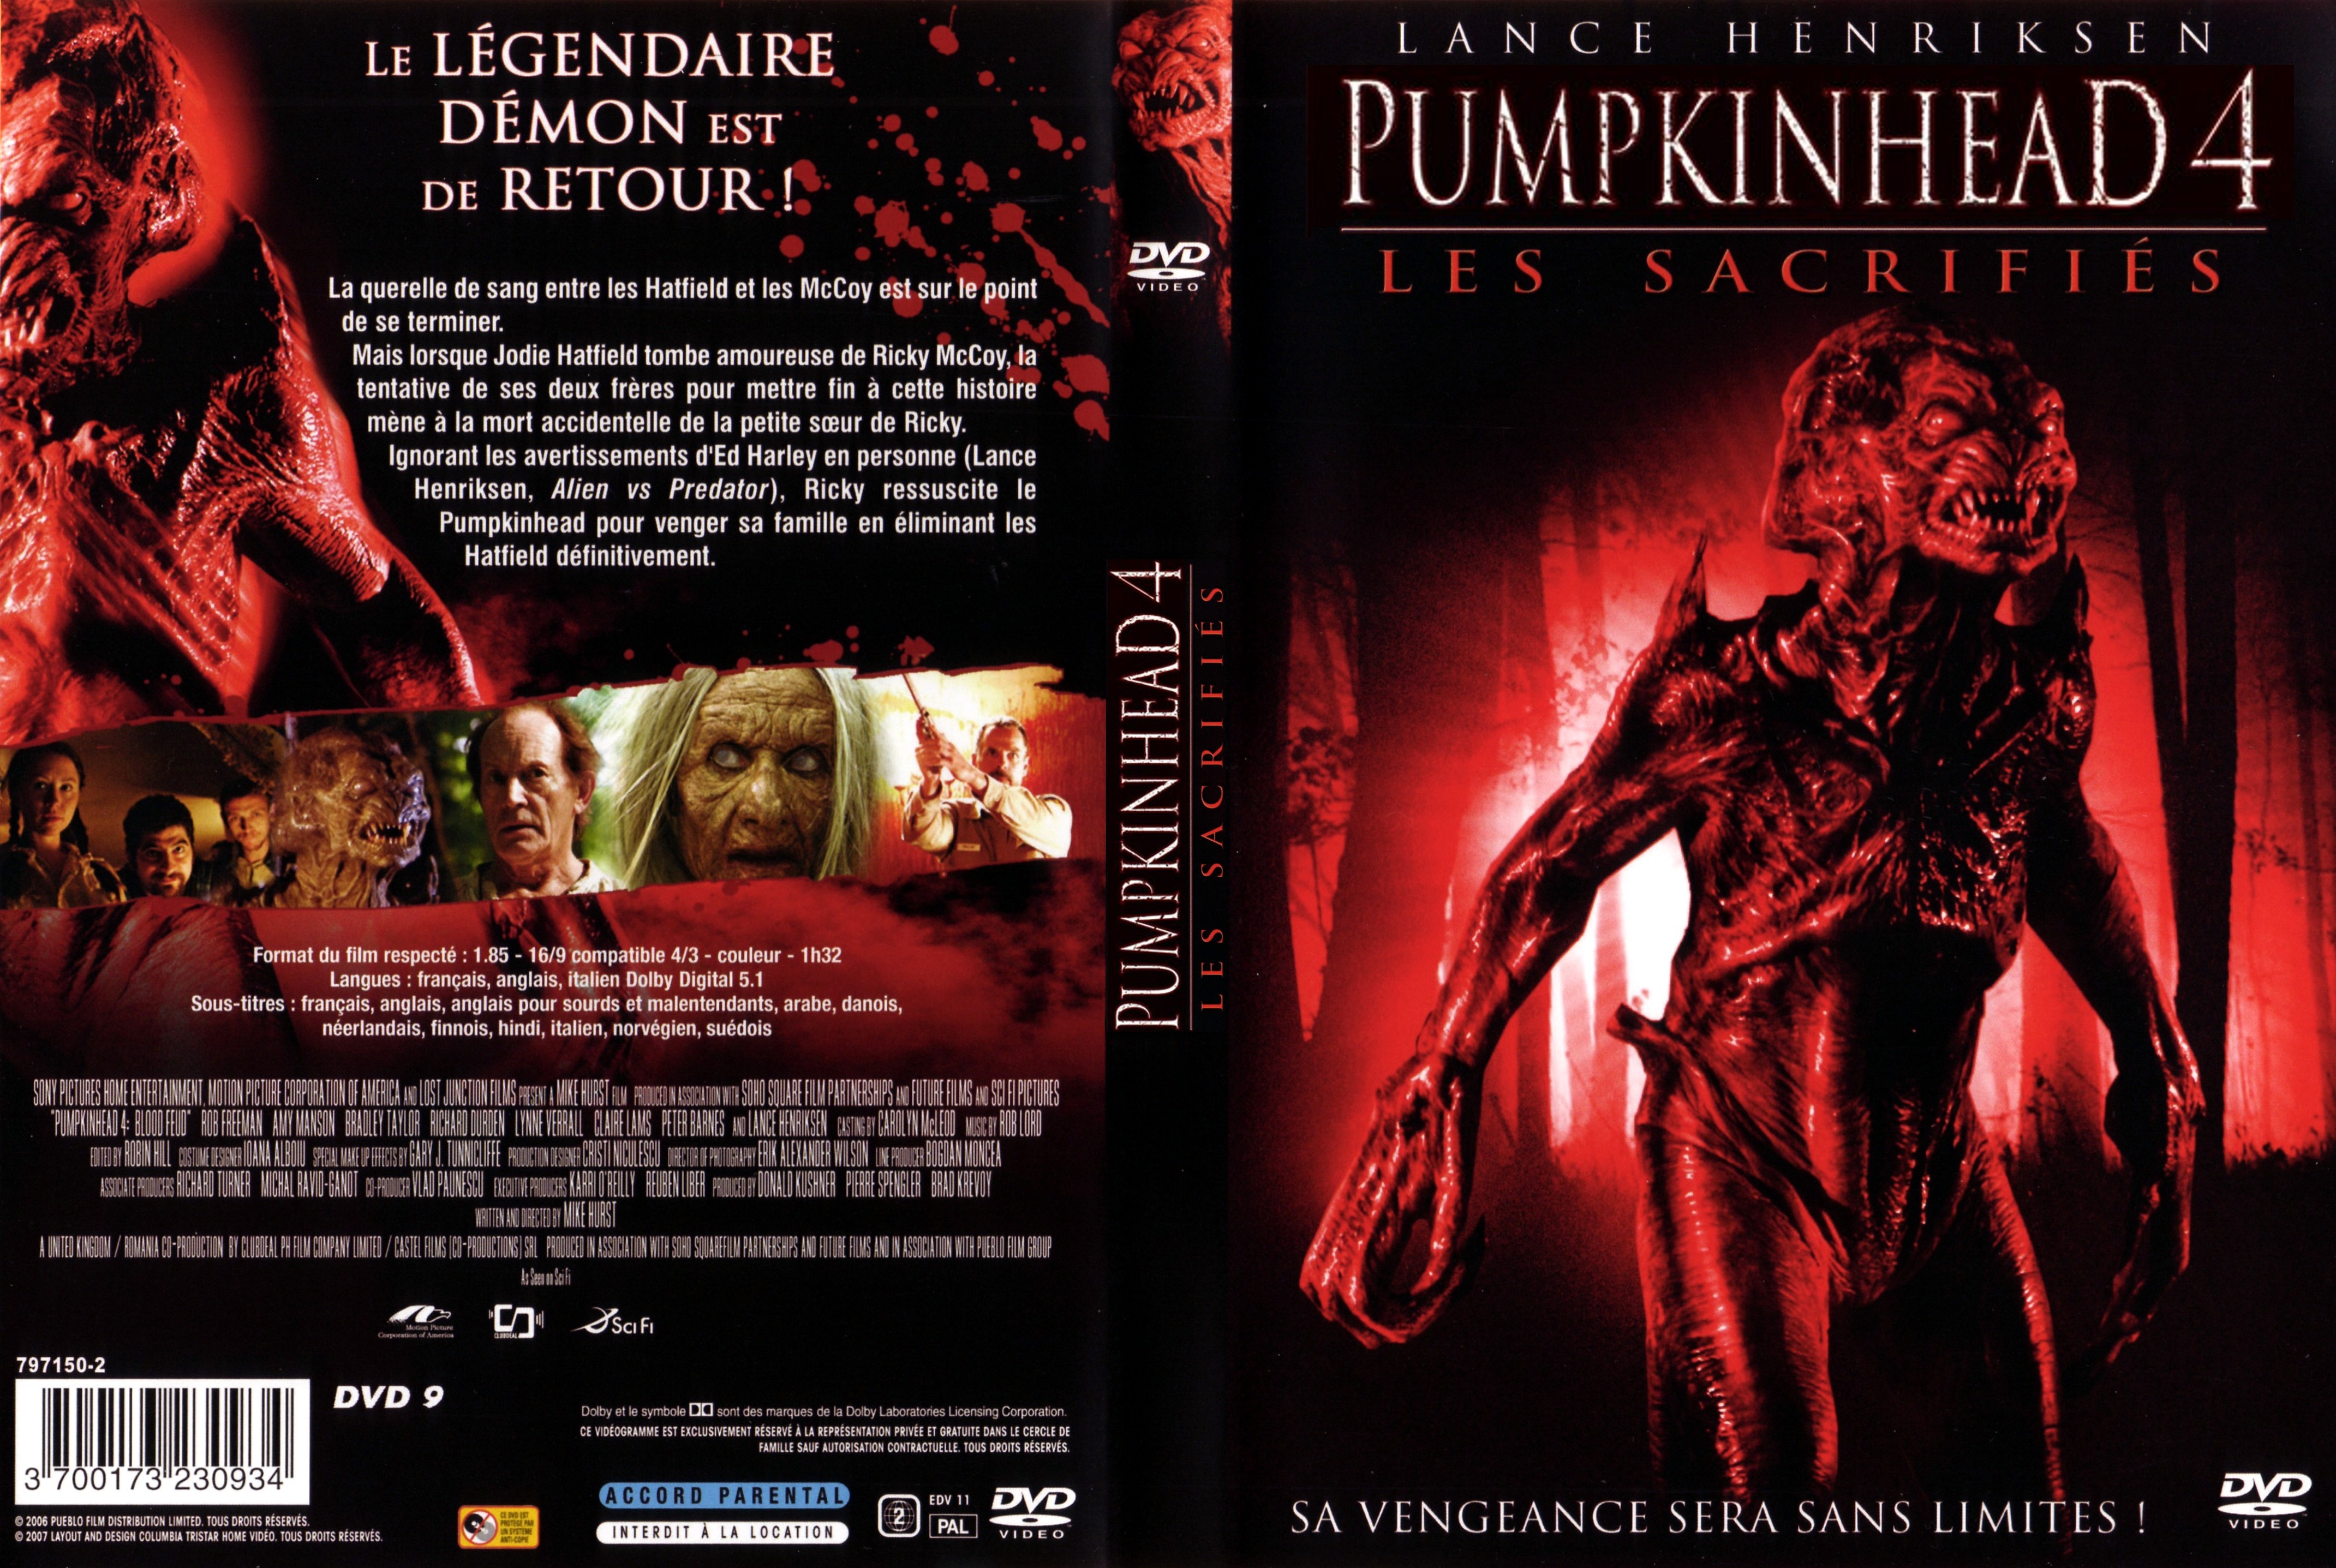 Jaquette DVD Pumpkinhead 4 les sacrifis